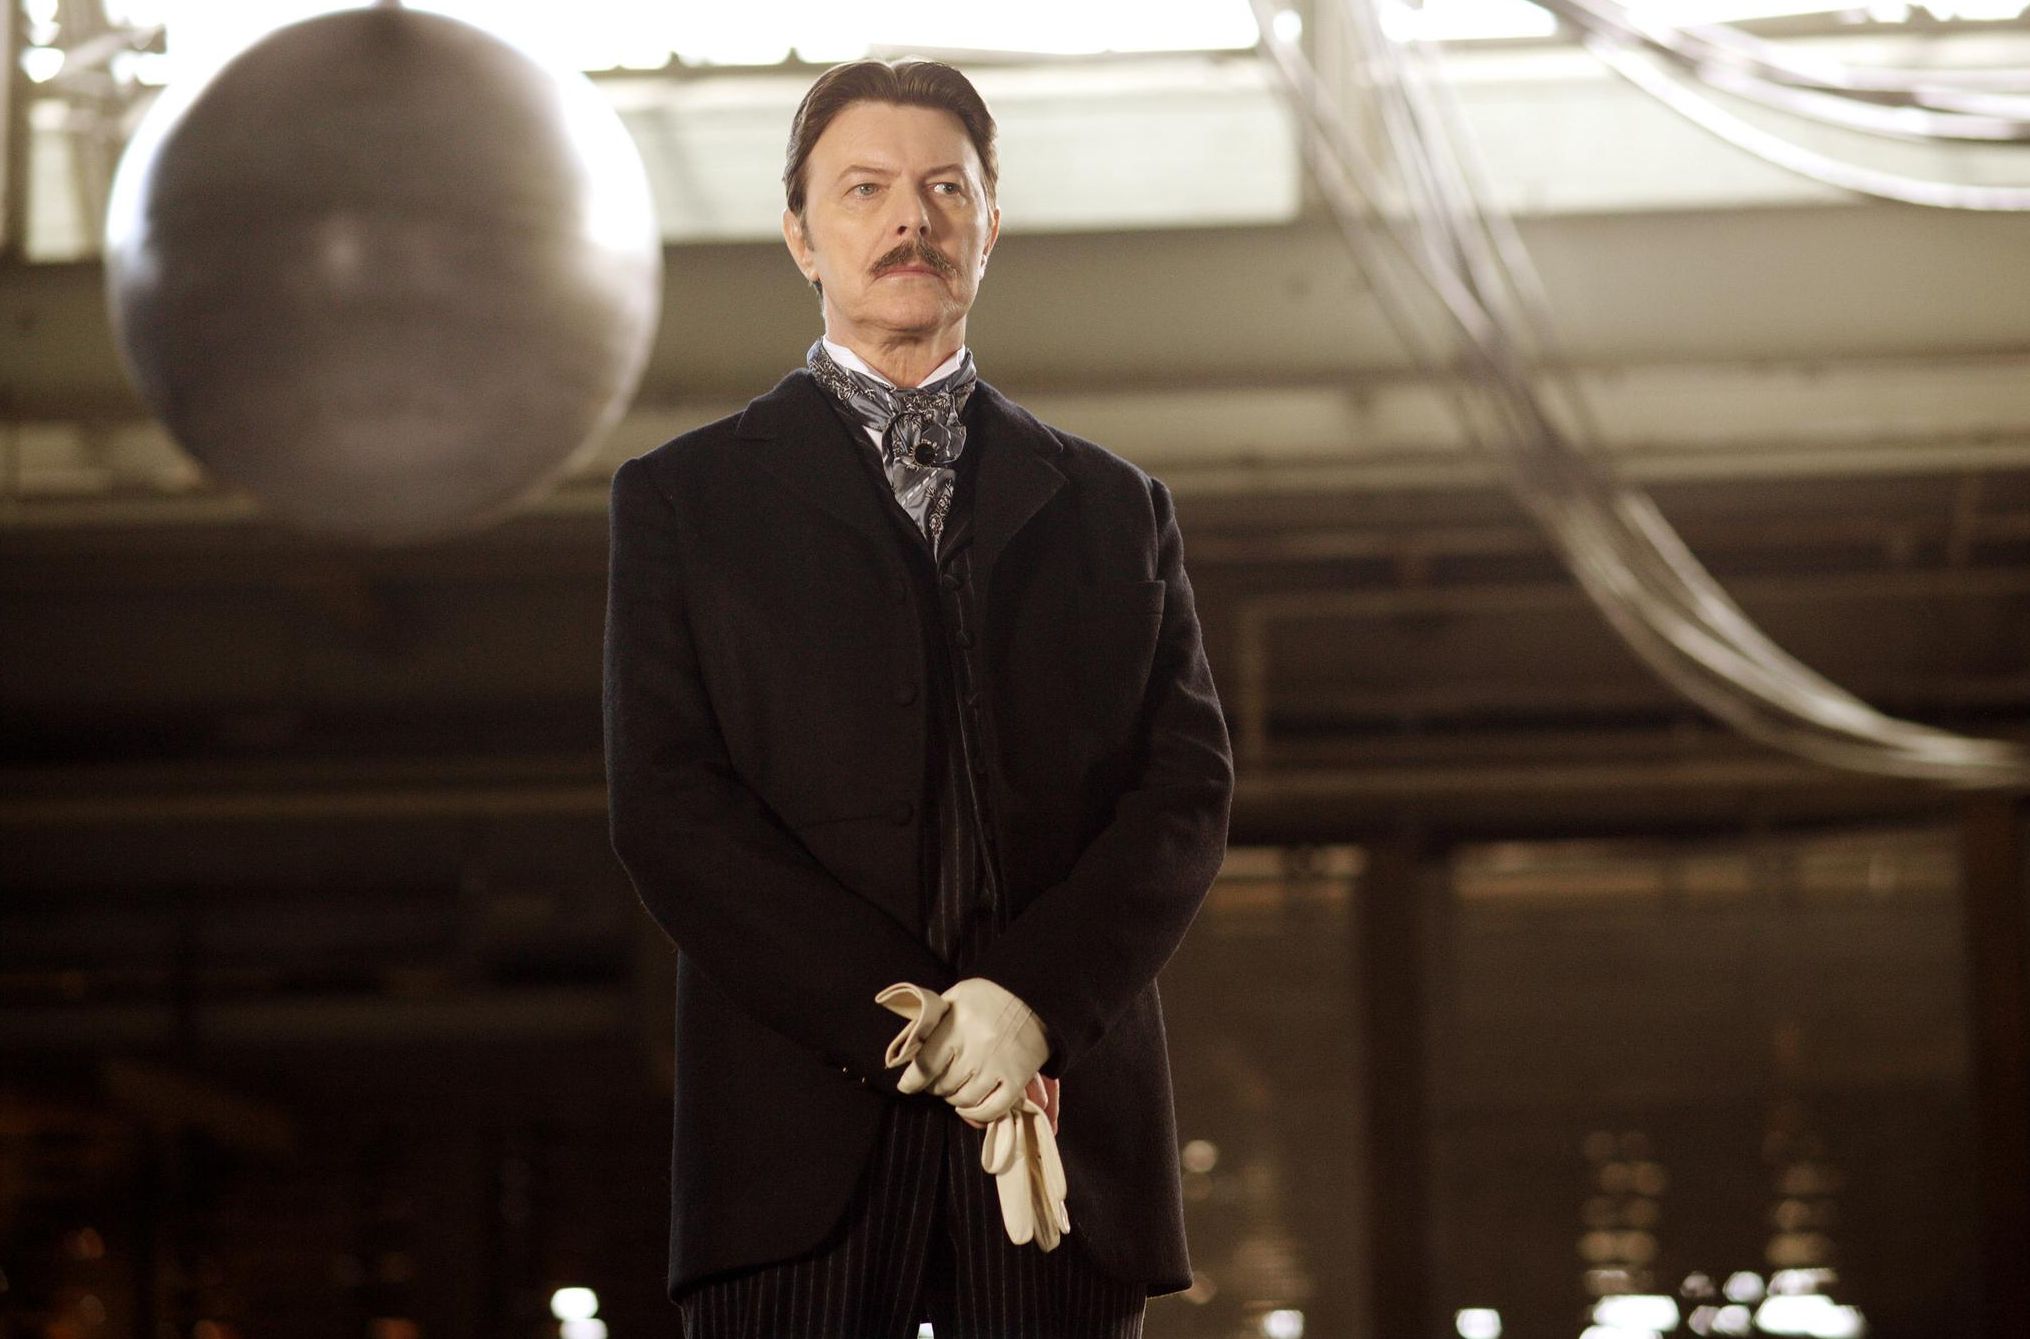 David Bowie as Nikolaj Tesla in The Prestige